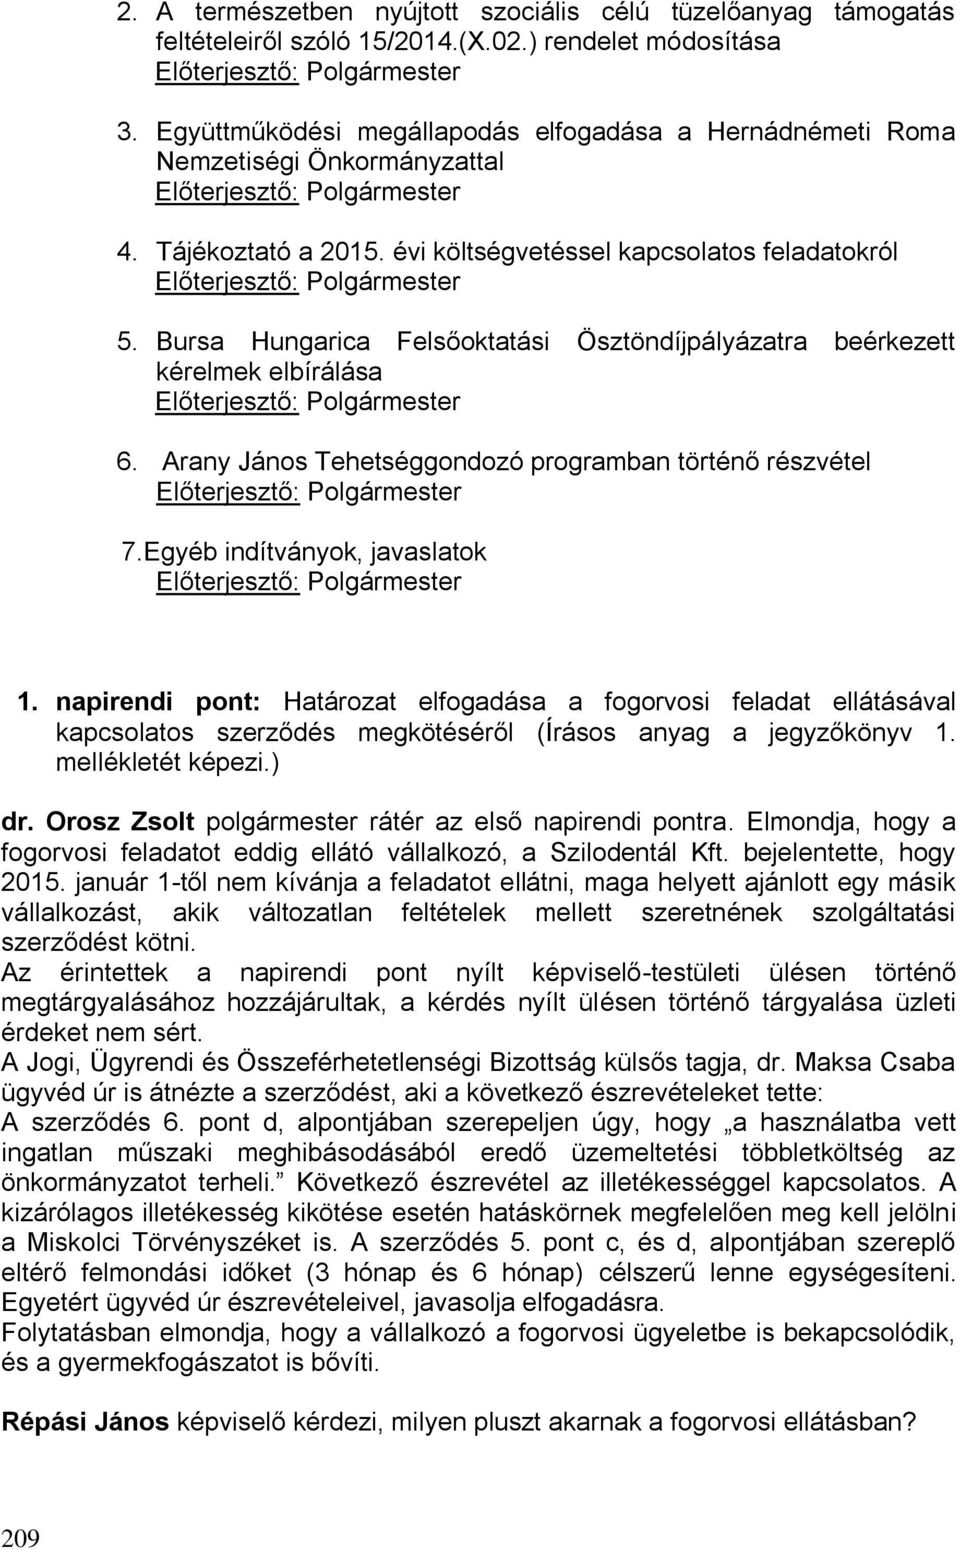 Bursa Hungarica Felsőoktatási Ösztöndíjpályázatra beérkezett kérelmek elbírálása 6. Arany János Tehetséggondozó programban történő részvétel 7.Egyéb indítványok, javaslatok 1.